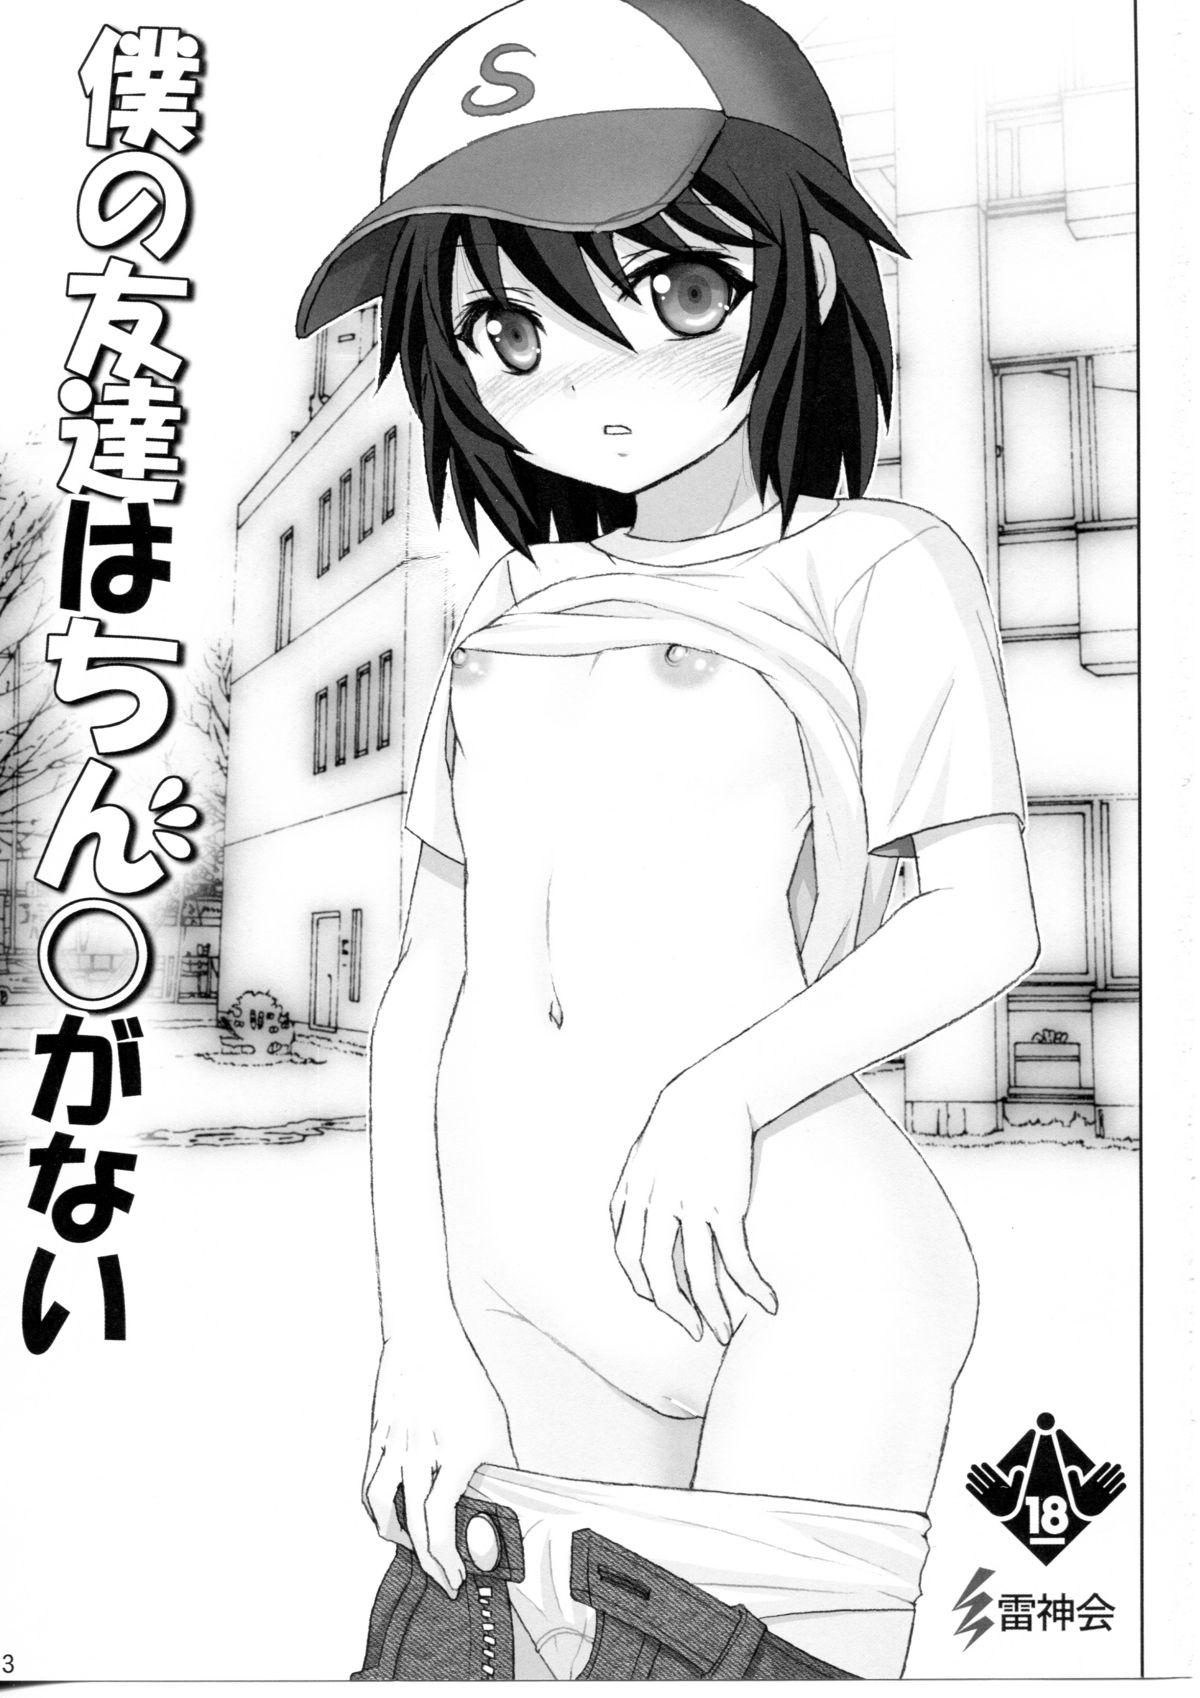 Amature Porn Boku no Tomodachi wa Chin○ ga Nai - Boku wa tomodachi ga sukunai Horny - Page 2